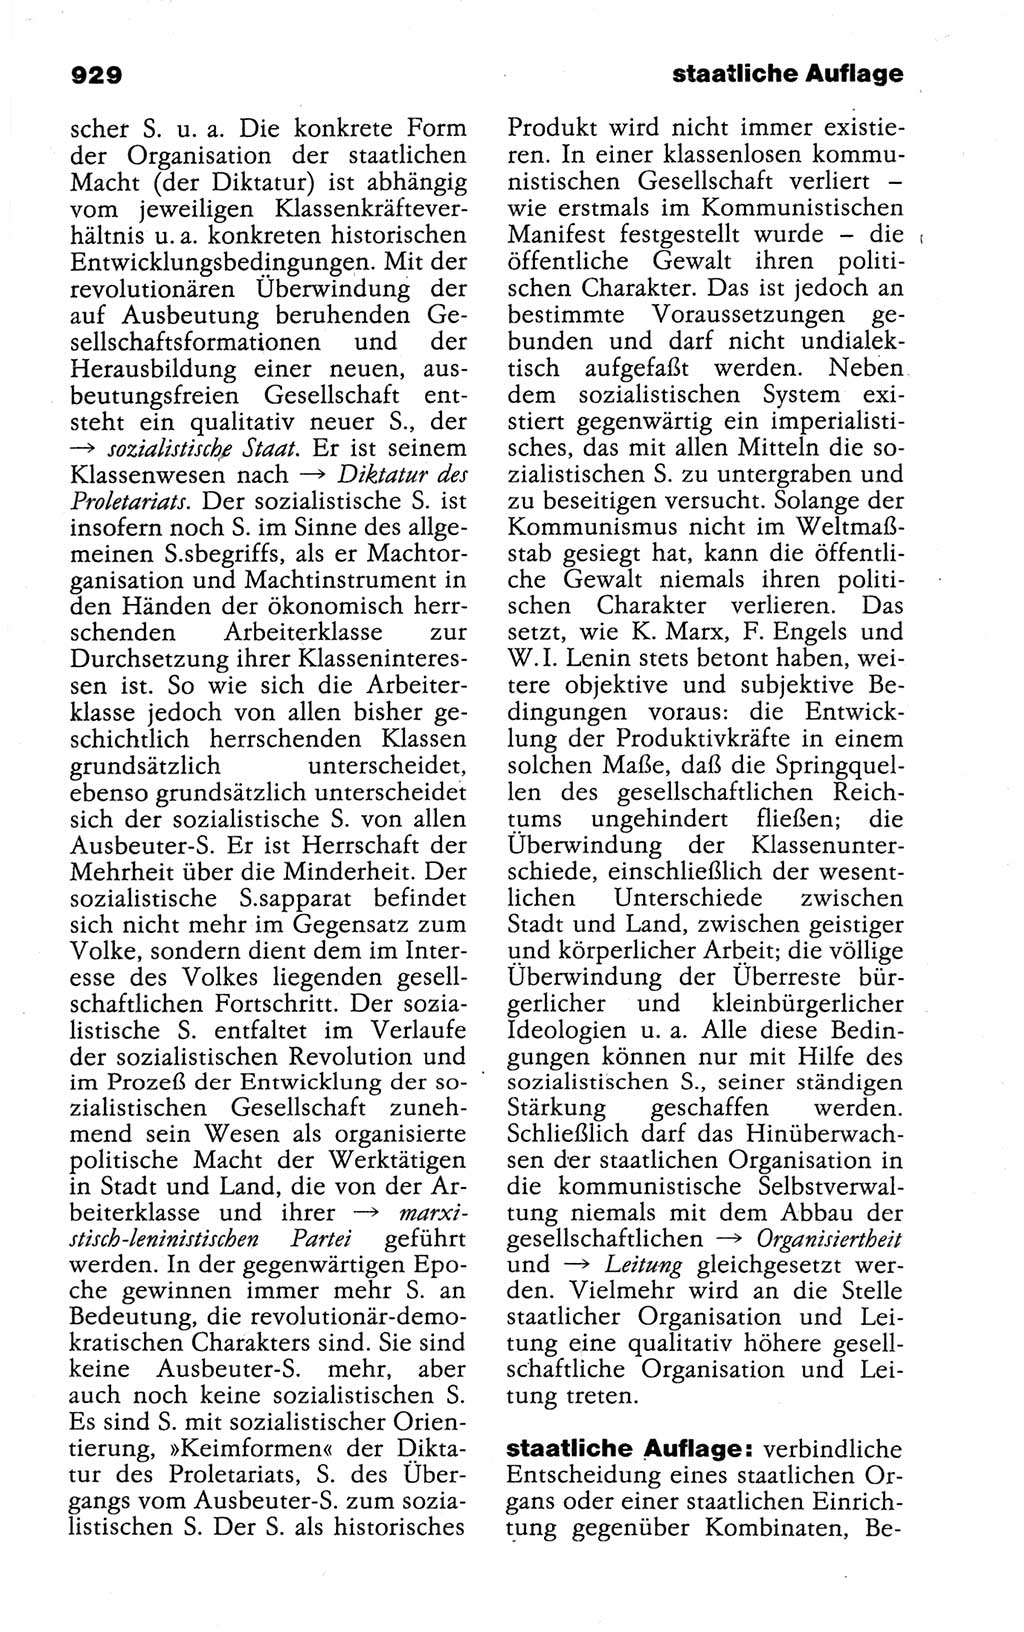 Kleines politisches Wörterbuch [Deutsche Demokratische Republik (DDR)] 1988, Seite 929 (Kl. pol. Wb. DDR 1988, S. 929)